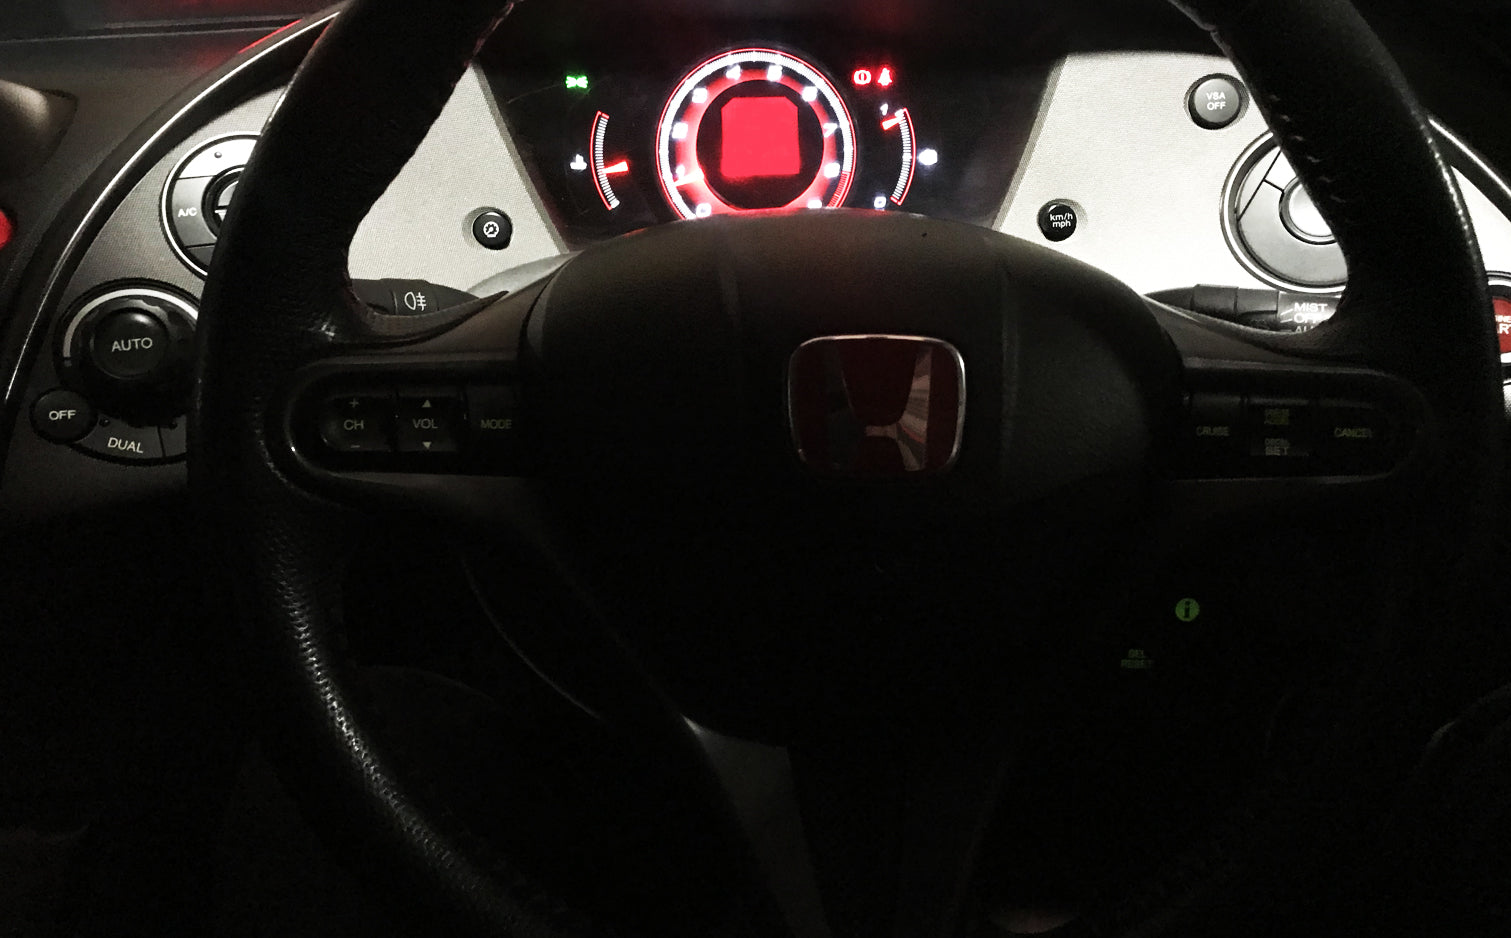 Honda Civic Type R FN2 - Steering Wheel & Airbag